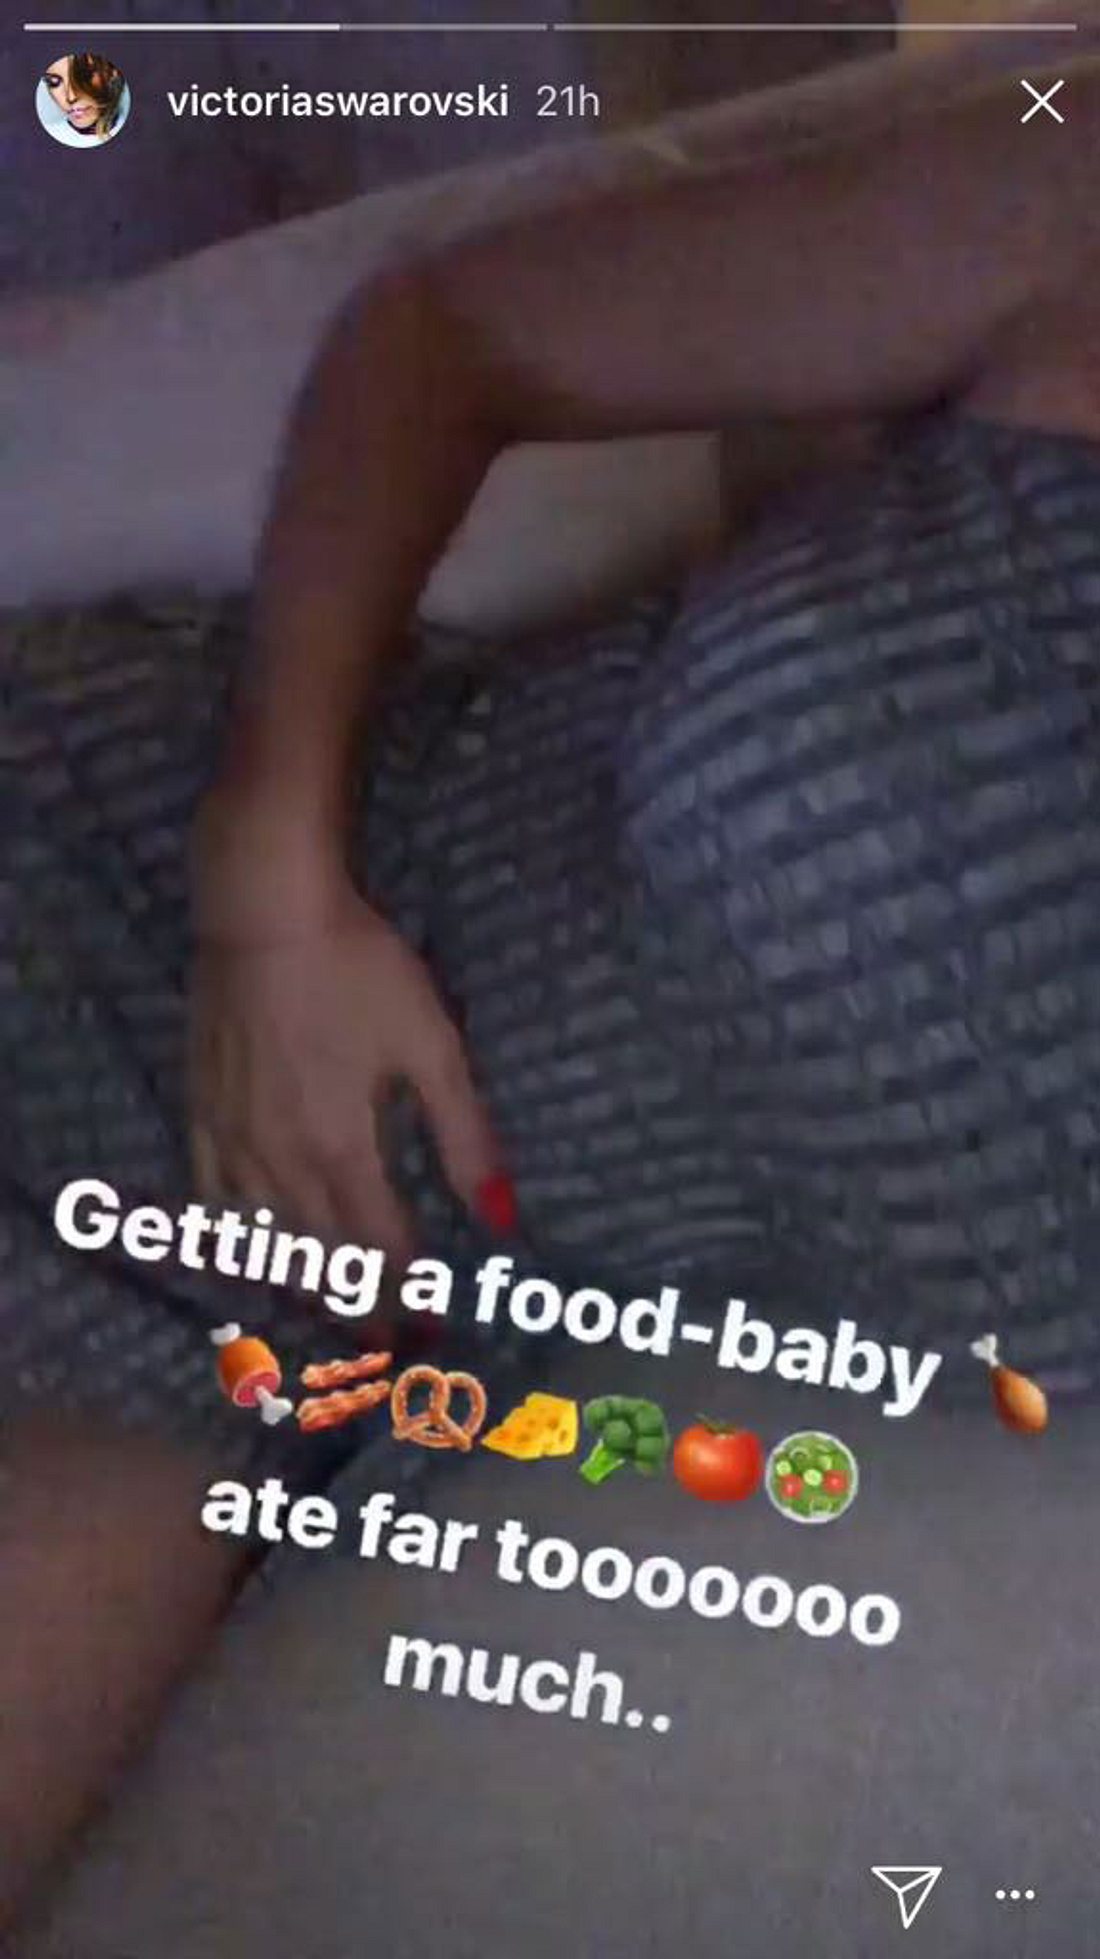 Victoria Swarovski und ihr Food-Baby